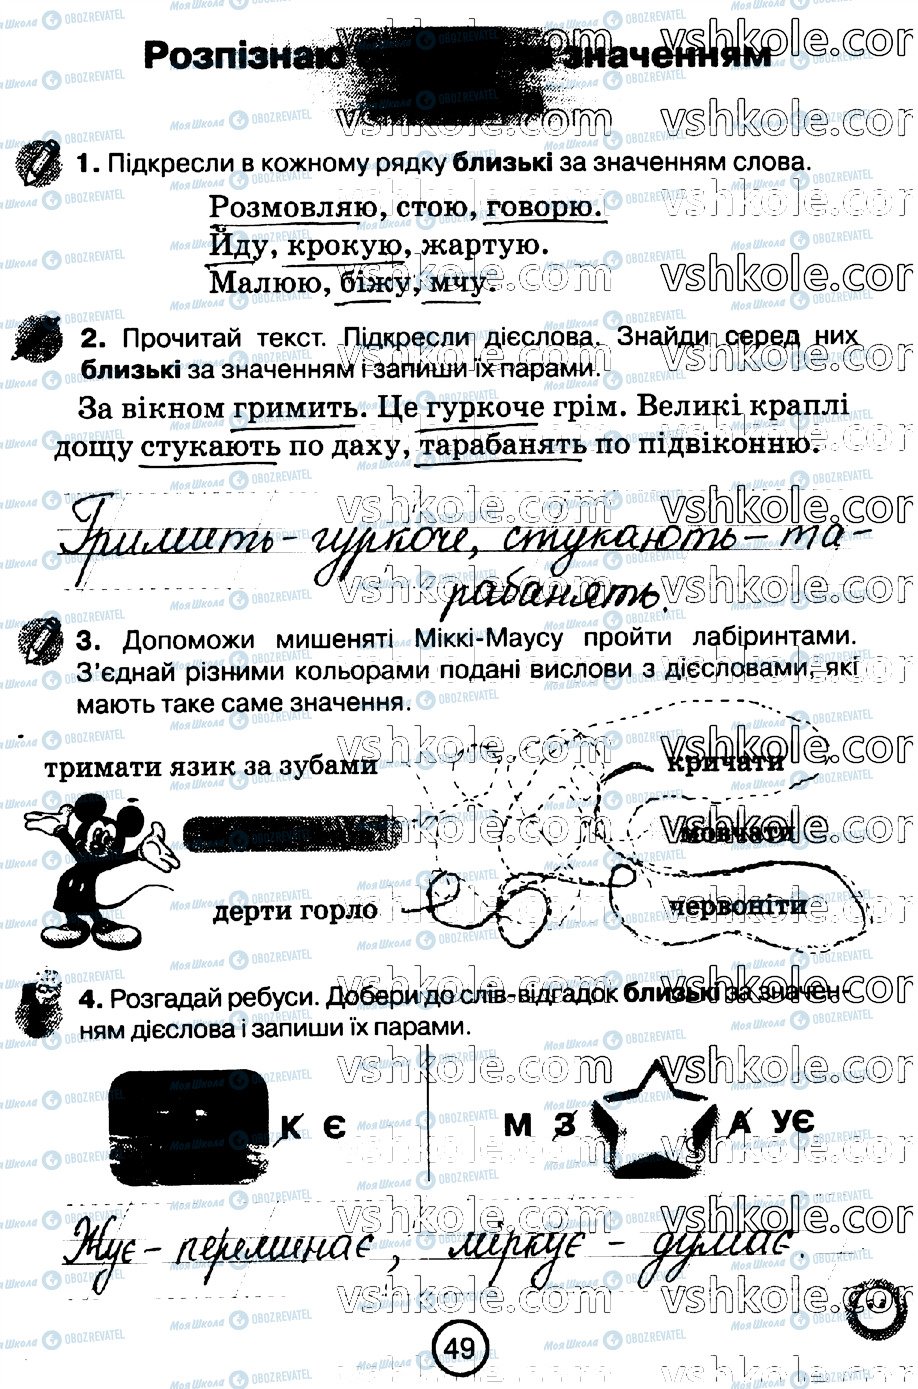 ГДЗ Укр мова 2 класс страница стр49